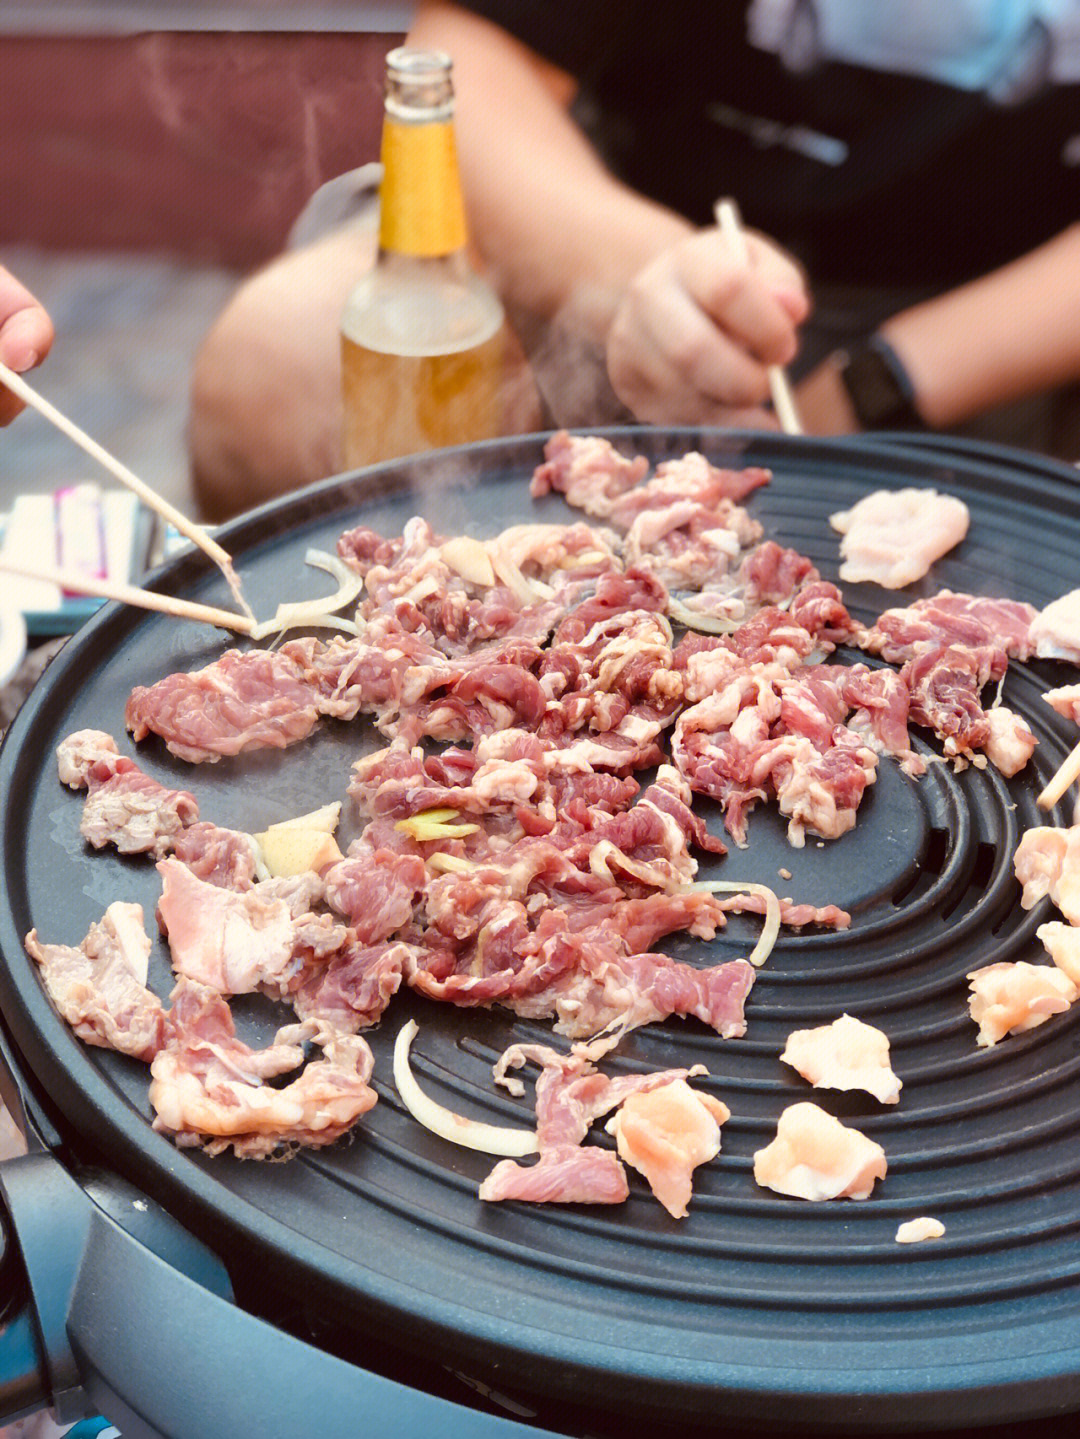 乌克兰腌肉图片